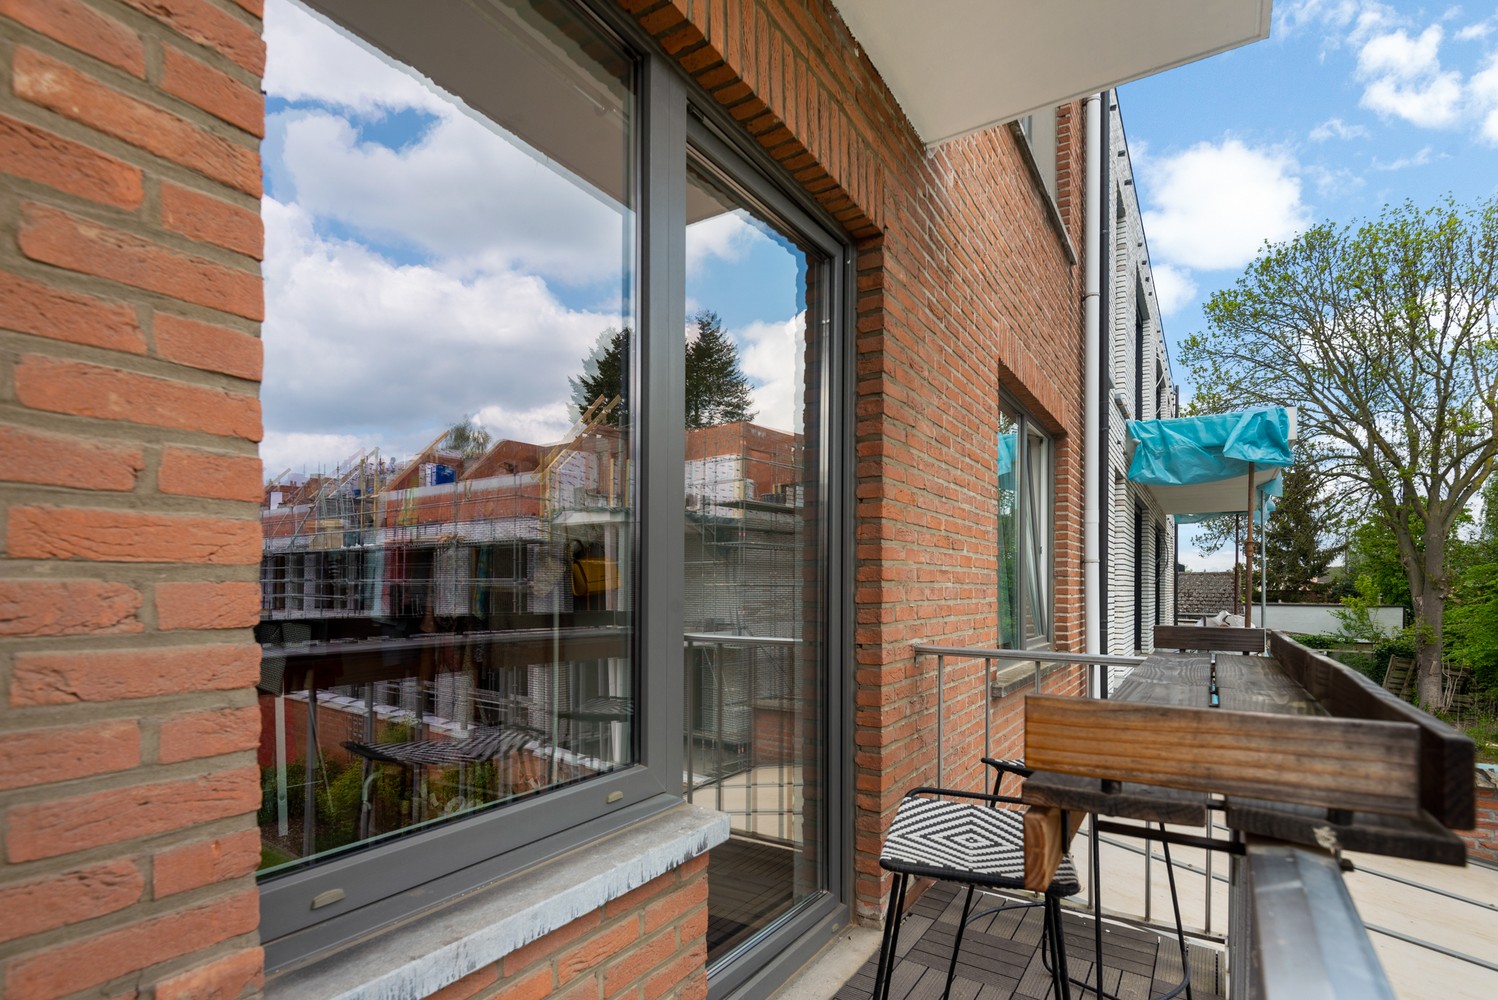 Modern appartement met 2 slaapkamers, terras & garagebox in hartje Broechem! afbeelding 14